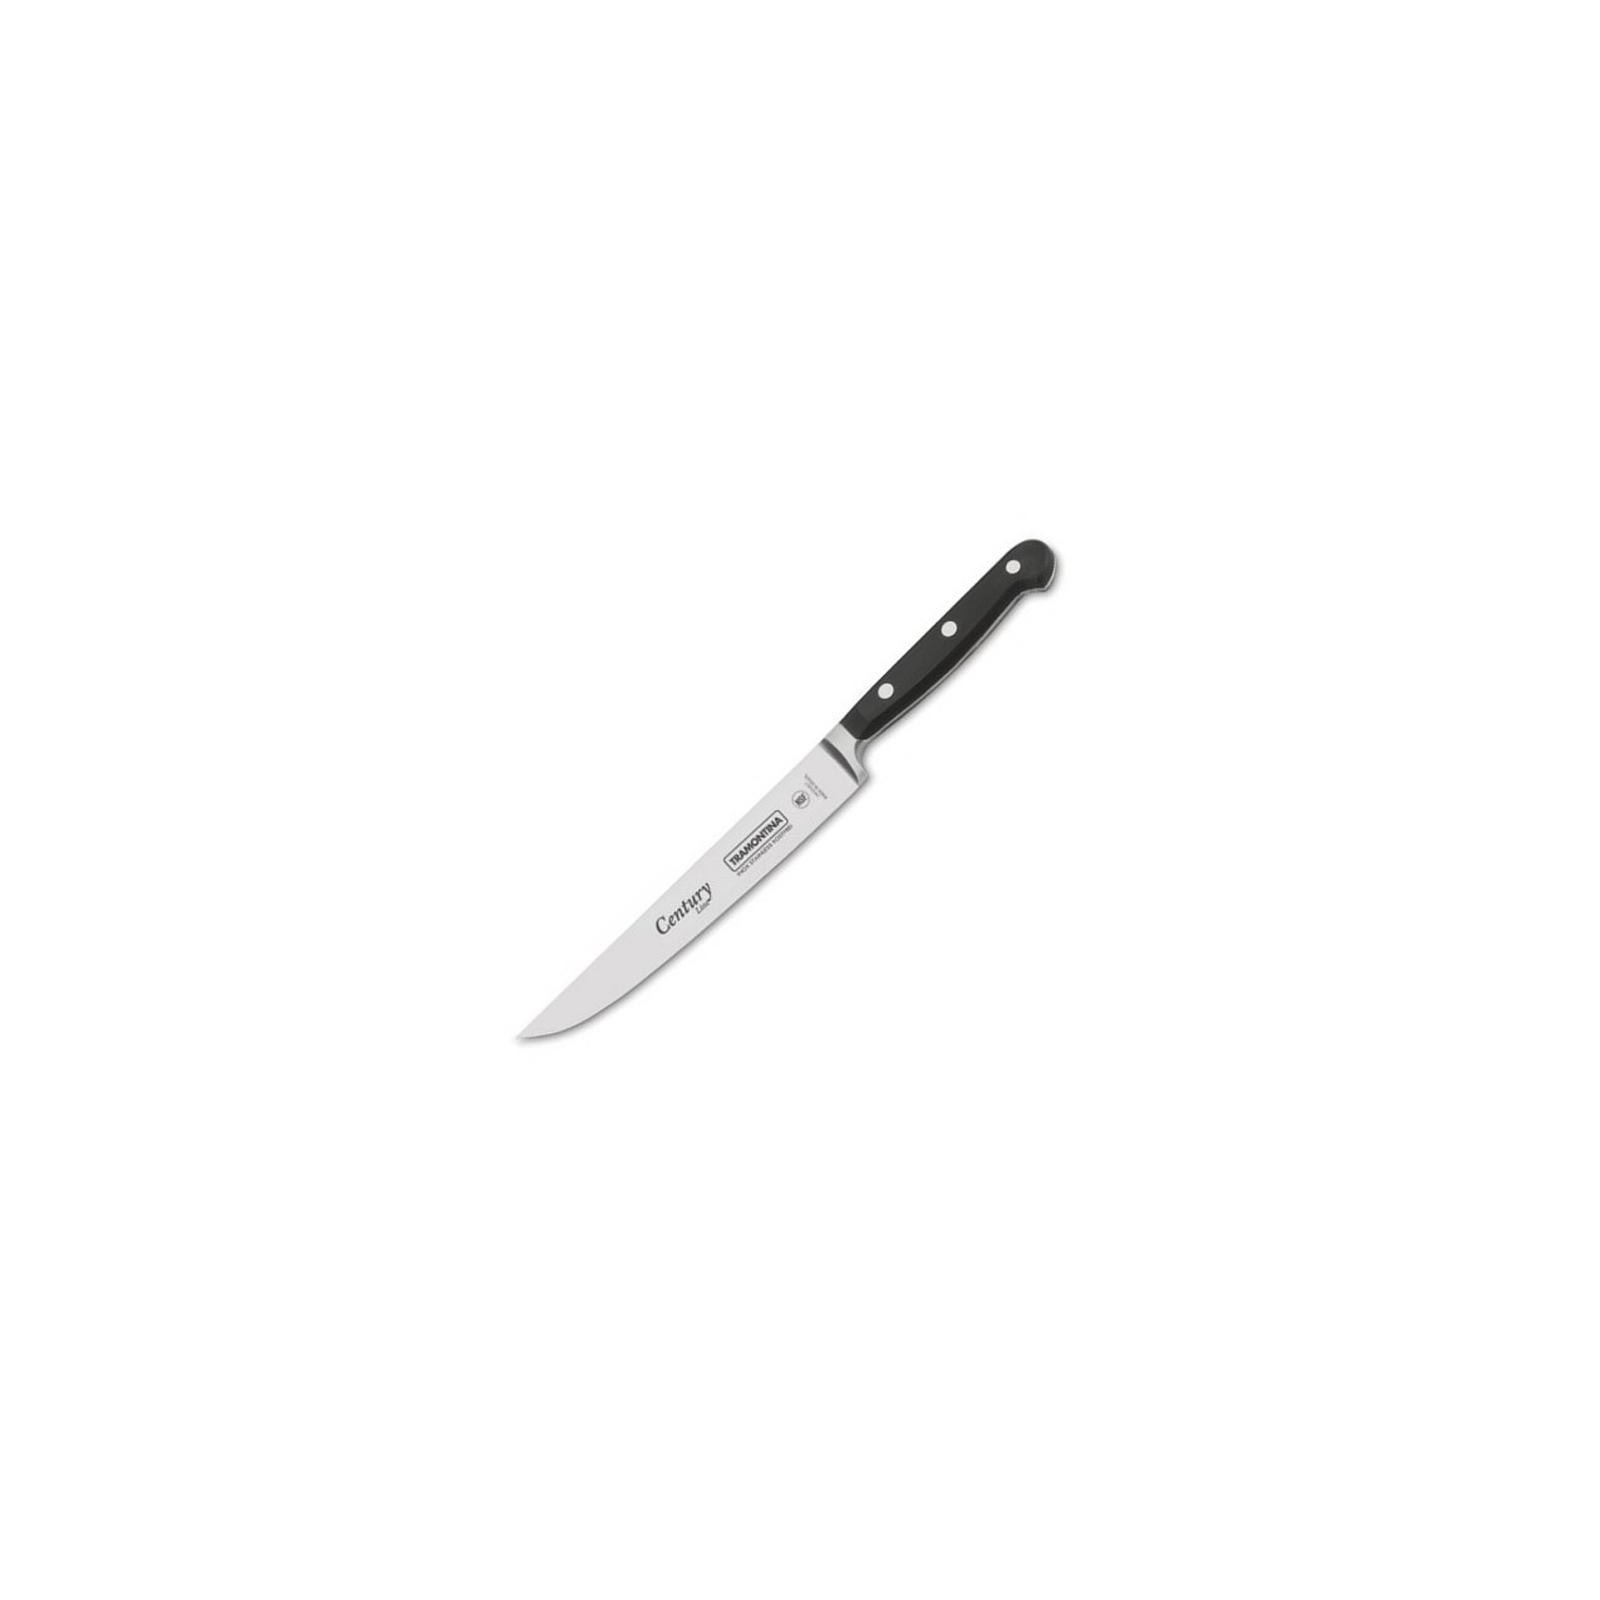 Кухонный нож Tramontina Century универсальный 203 мм Black (24007/107)